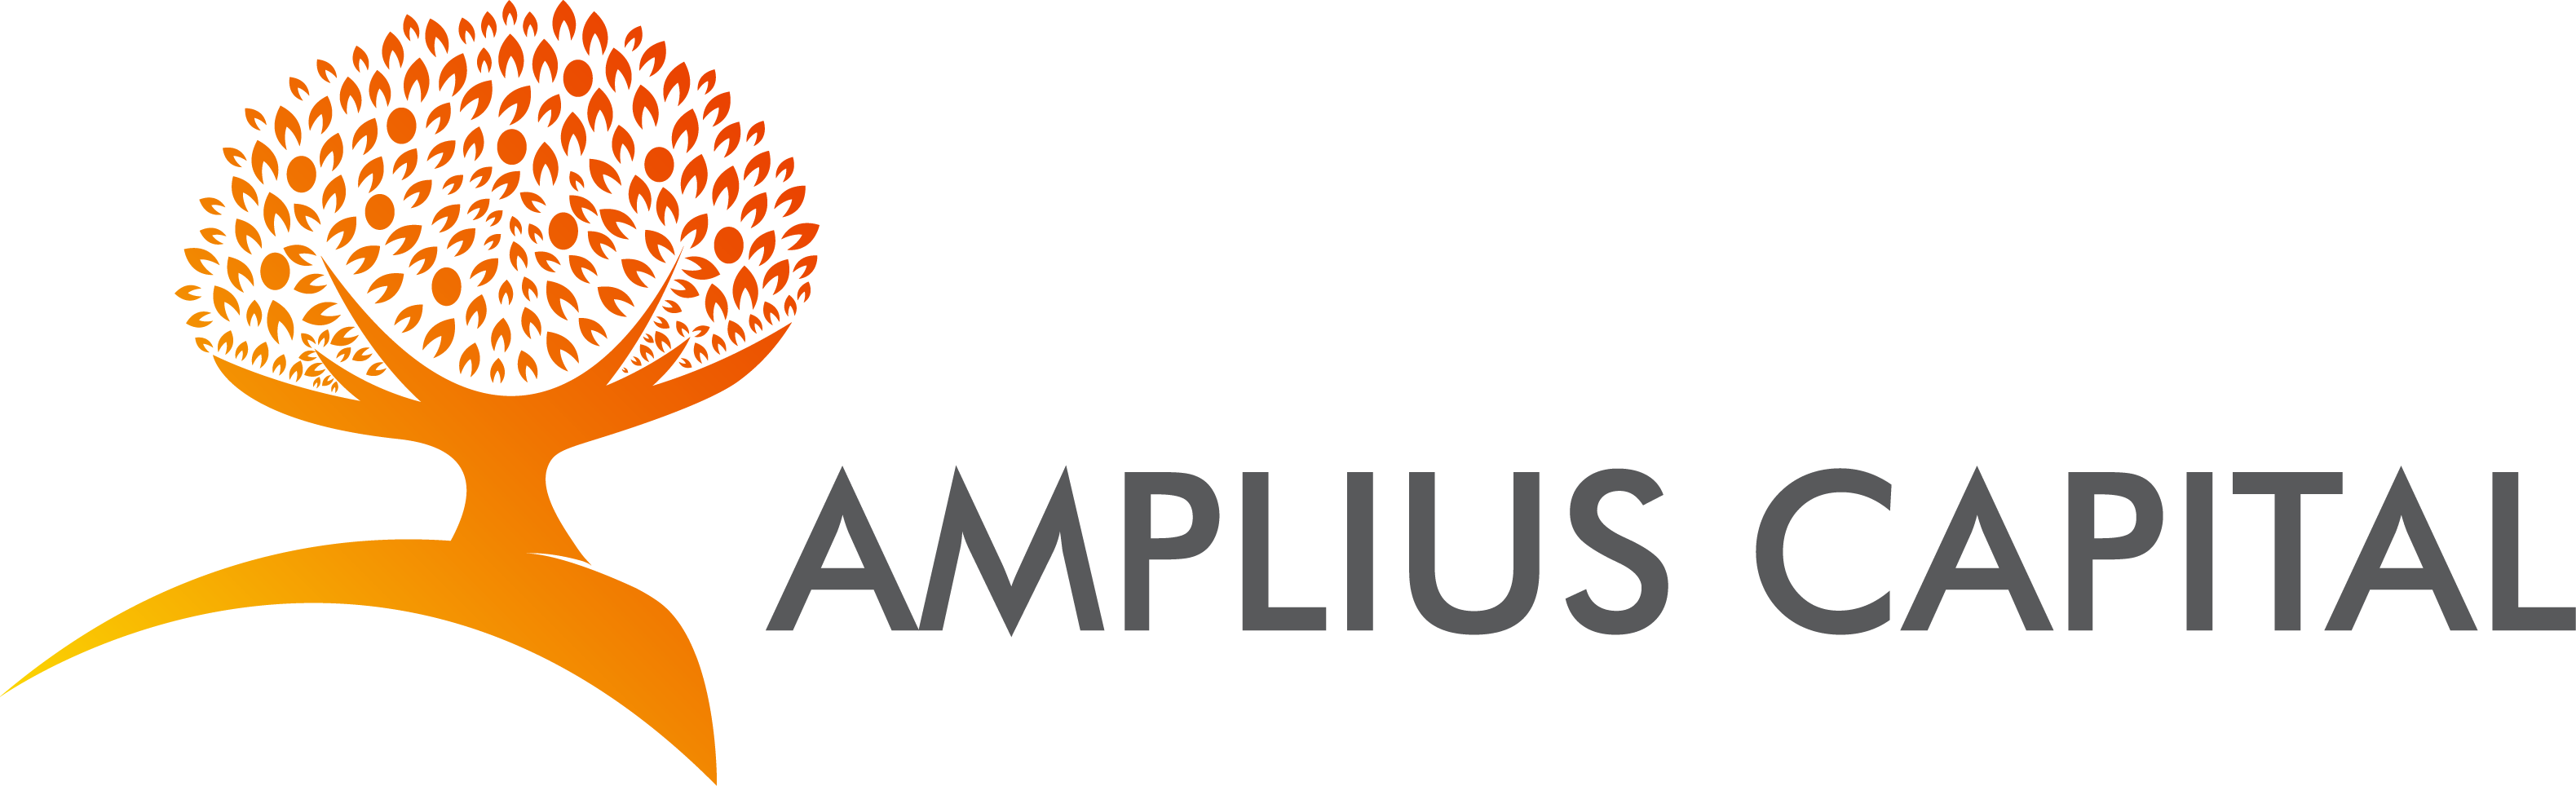 Amplius Capital